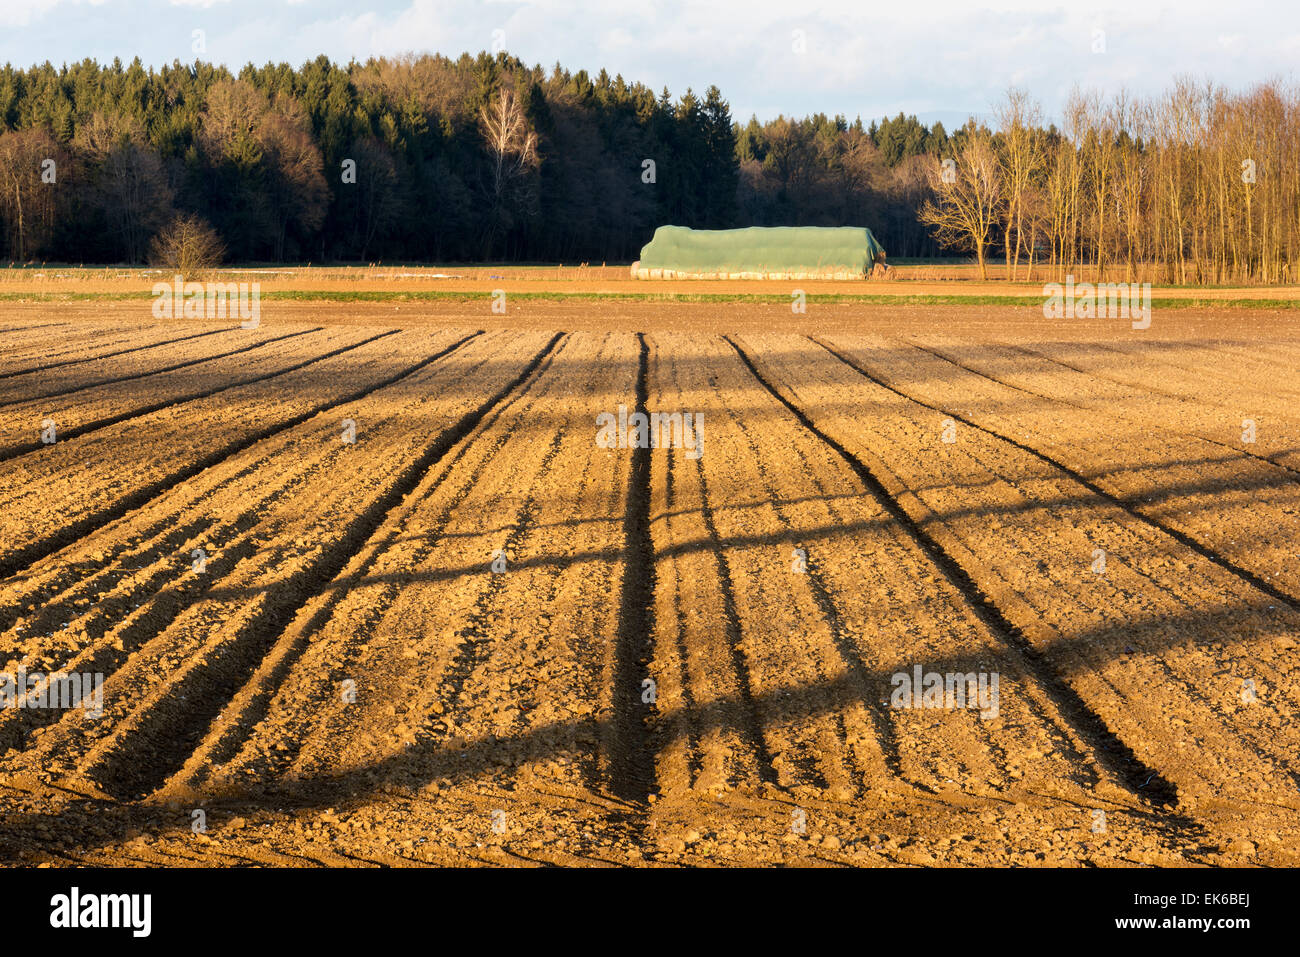 Début du printemps domaine domaine sillons semant Natureart nouveau départ brown europe Allemagne Bavière terre agricole agriculteurs Agriculture patt Banque D'Images